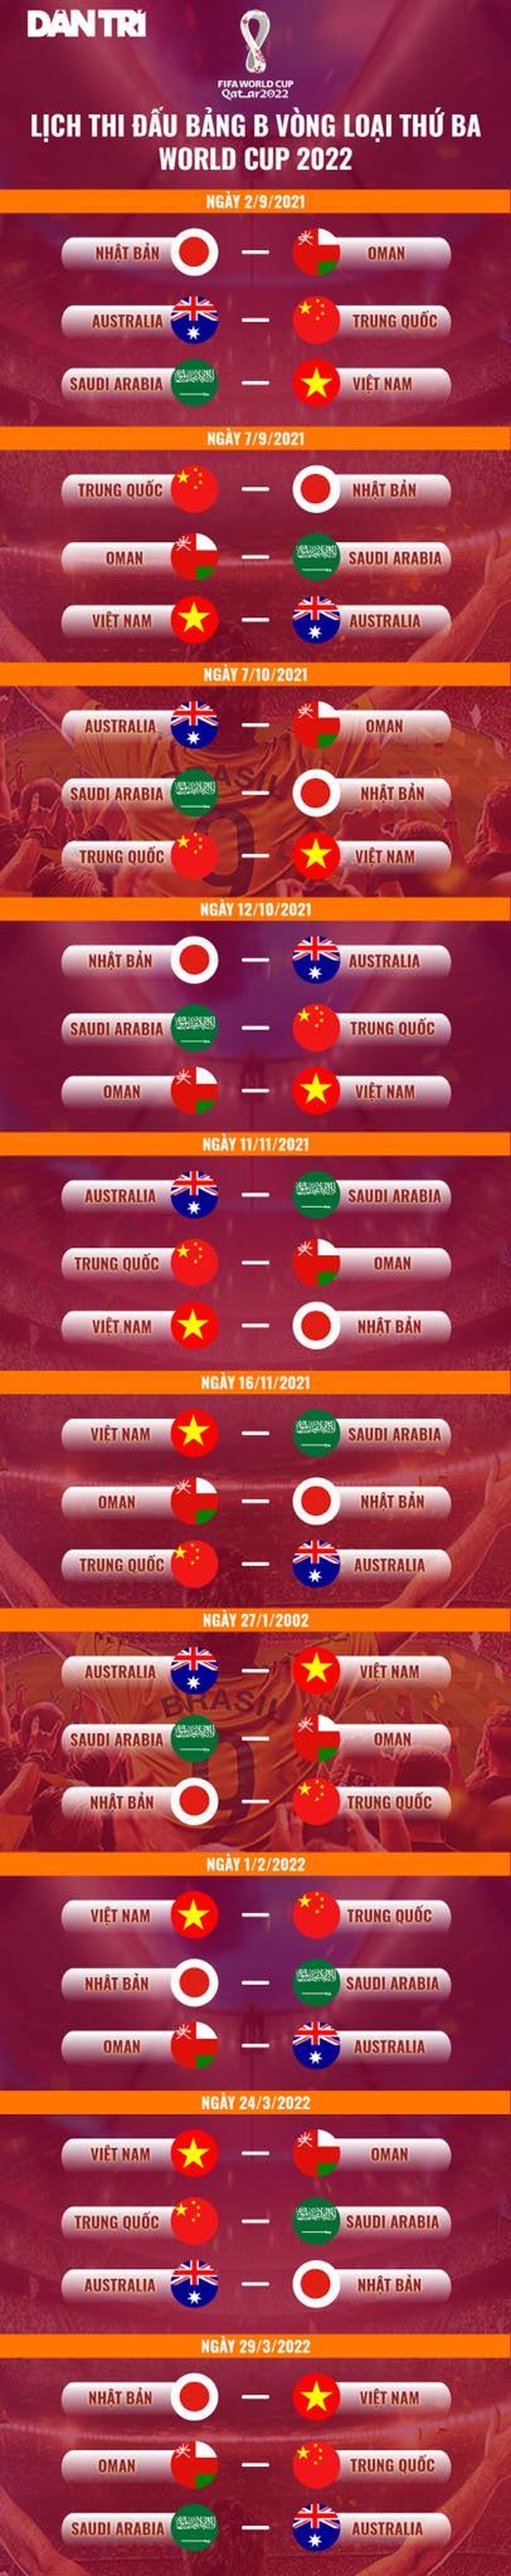 Báo Trung Quốc hả hê khi nằm chung bảng với đội tuyển Việt Nam - 5